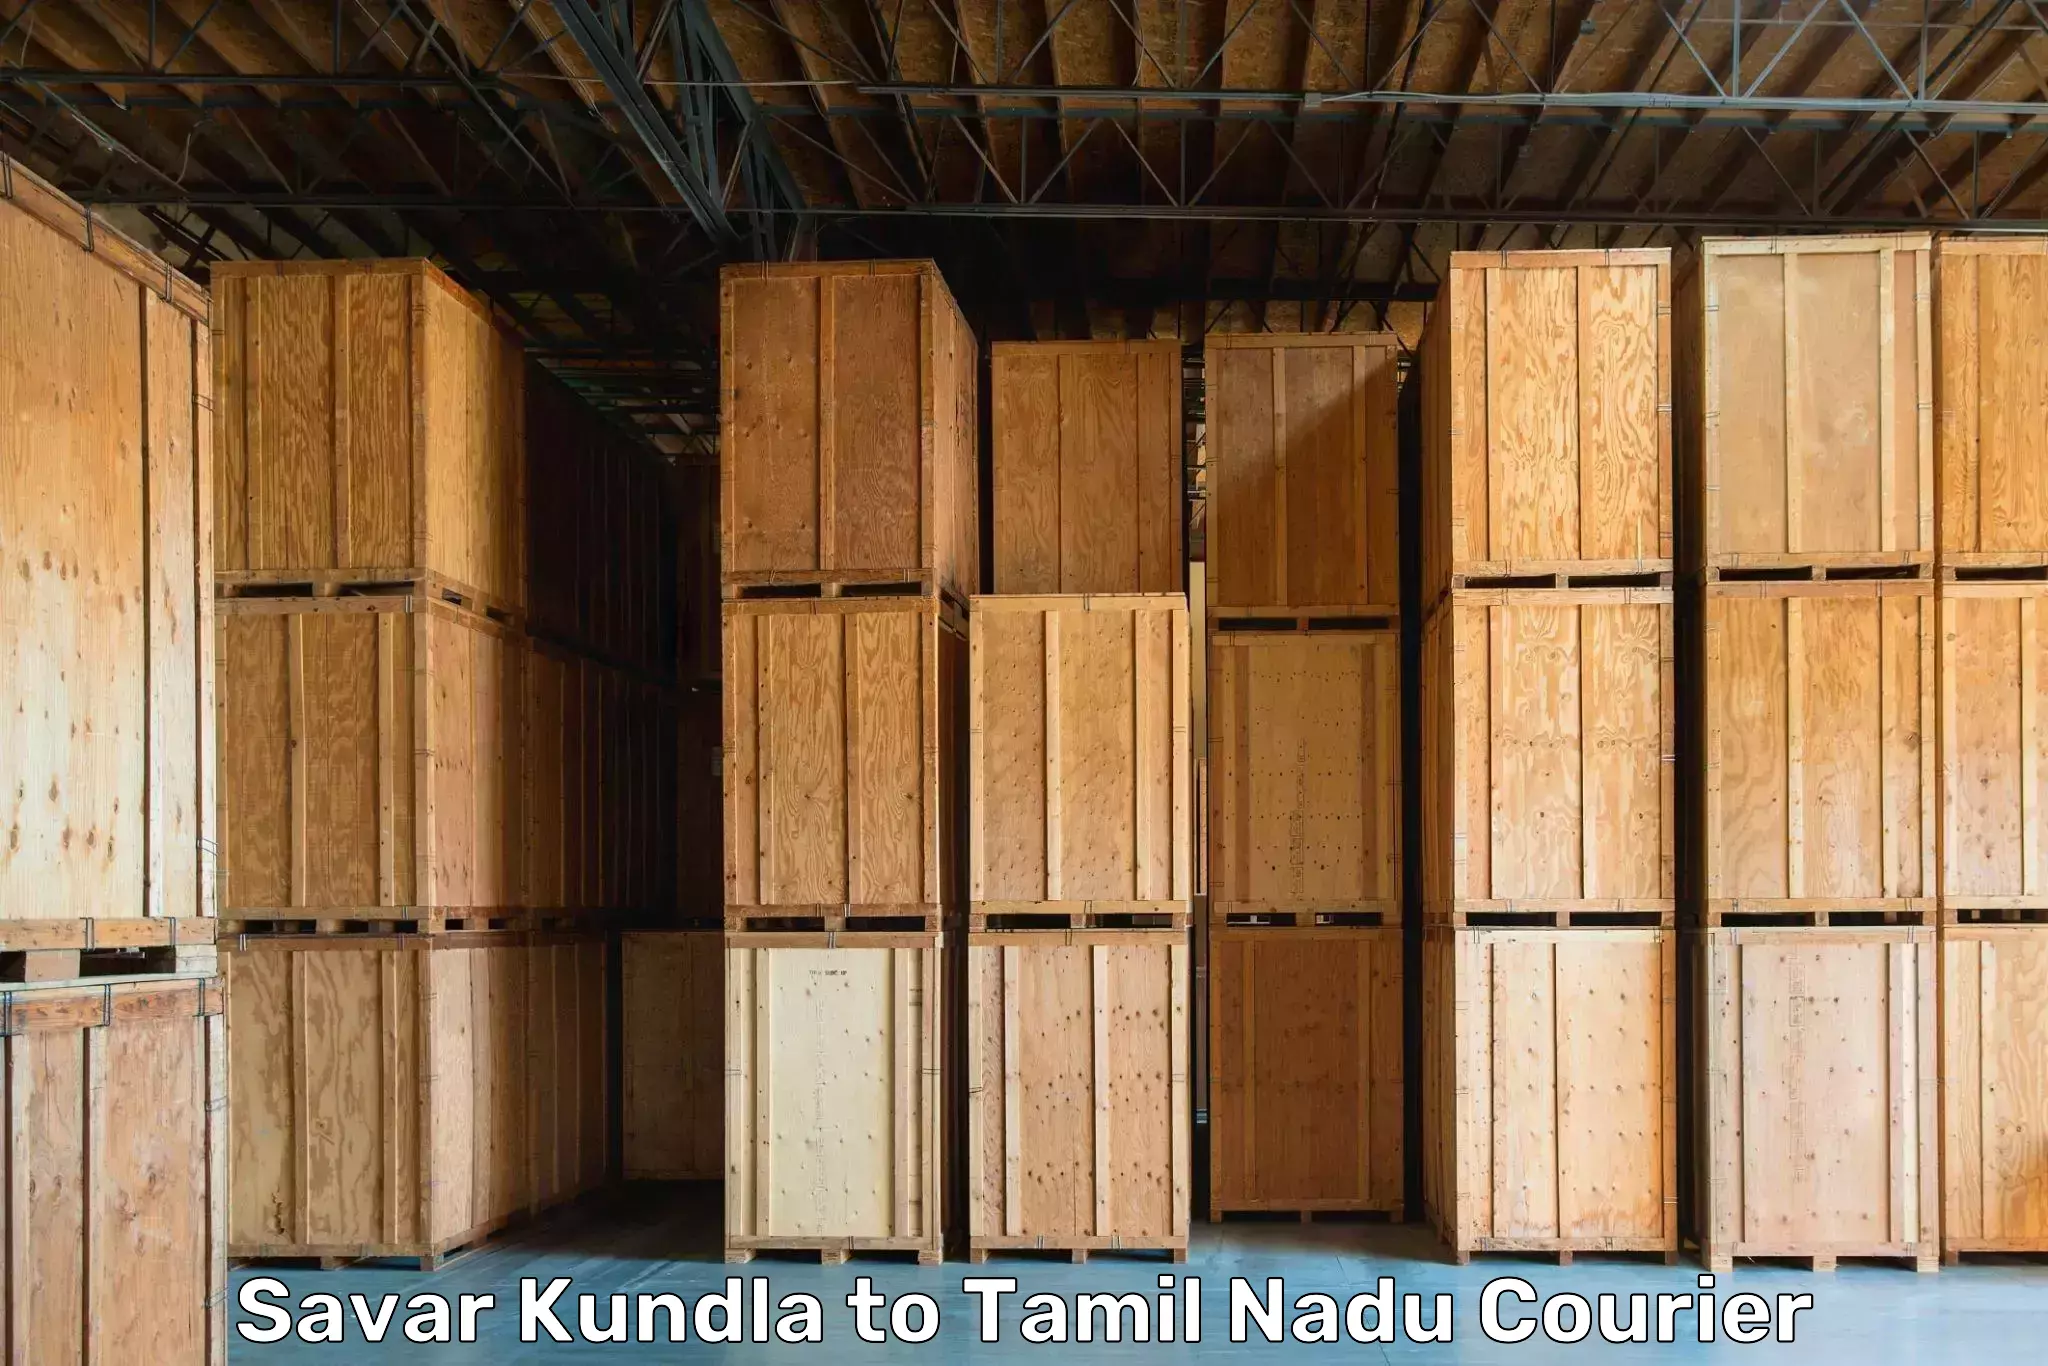 Professional moving company Savar Kundla to Namakkal